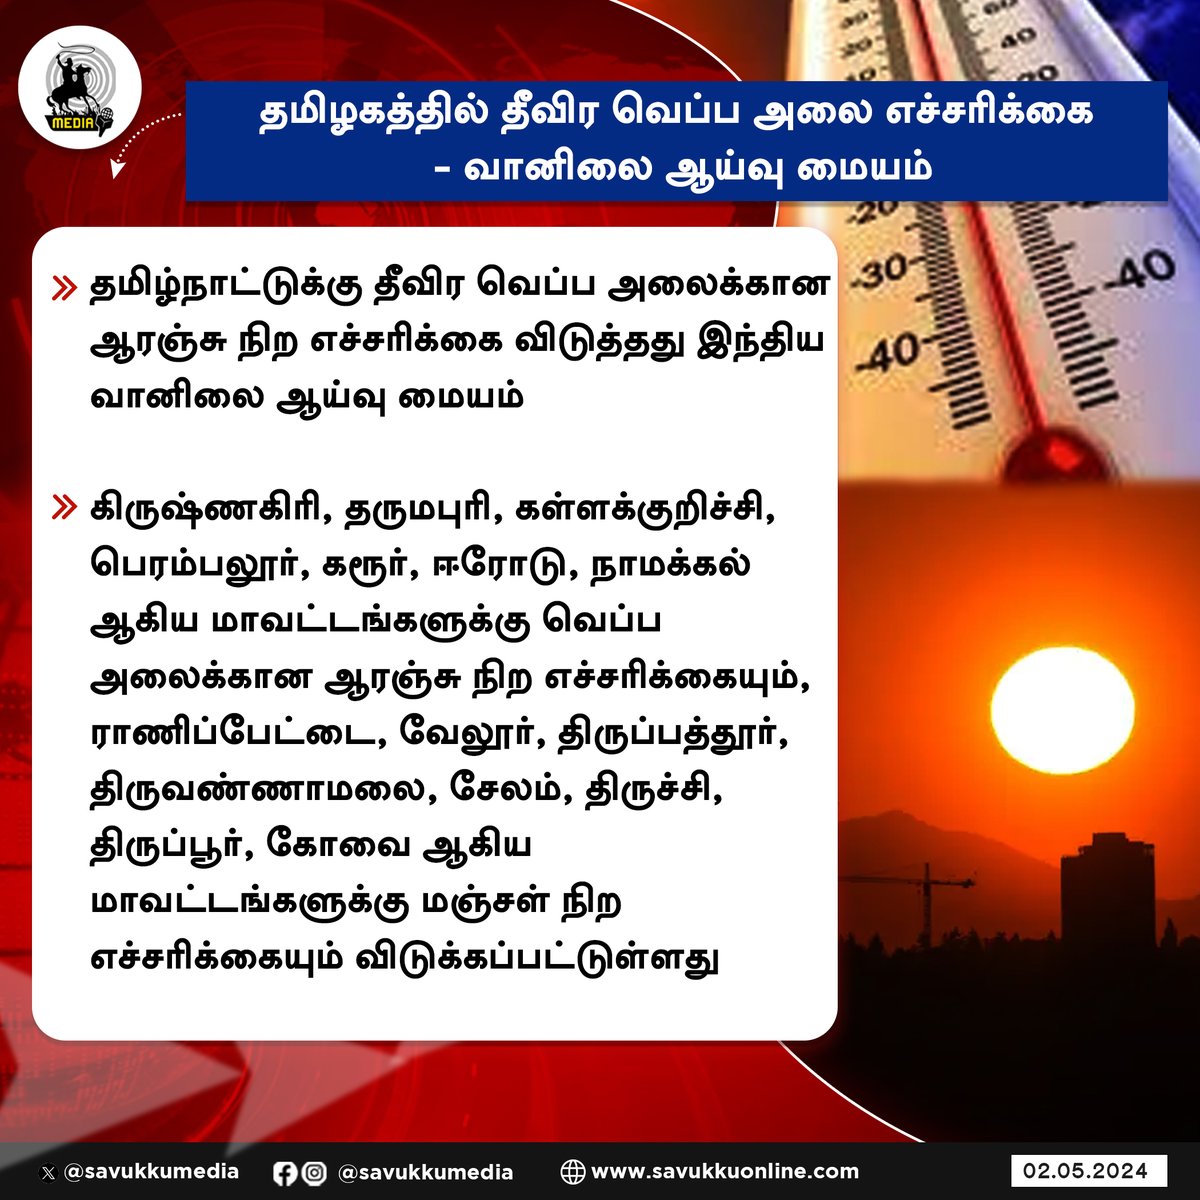 தமிழகத்தில் தீவிர வெப்ப அலை எச்சரிக்கை - வானிலை ஆய்வு மையம்

#heatwave #tamilnaduweathereport #TamilNadu #Chennai #Heat #savukkumedia #savukkunews